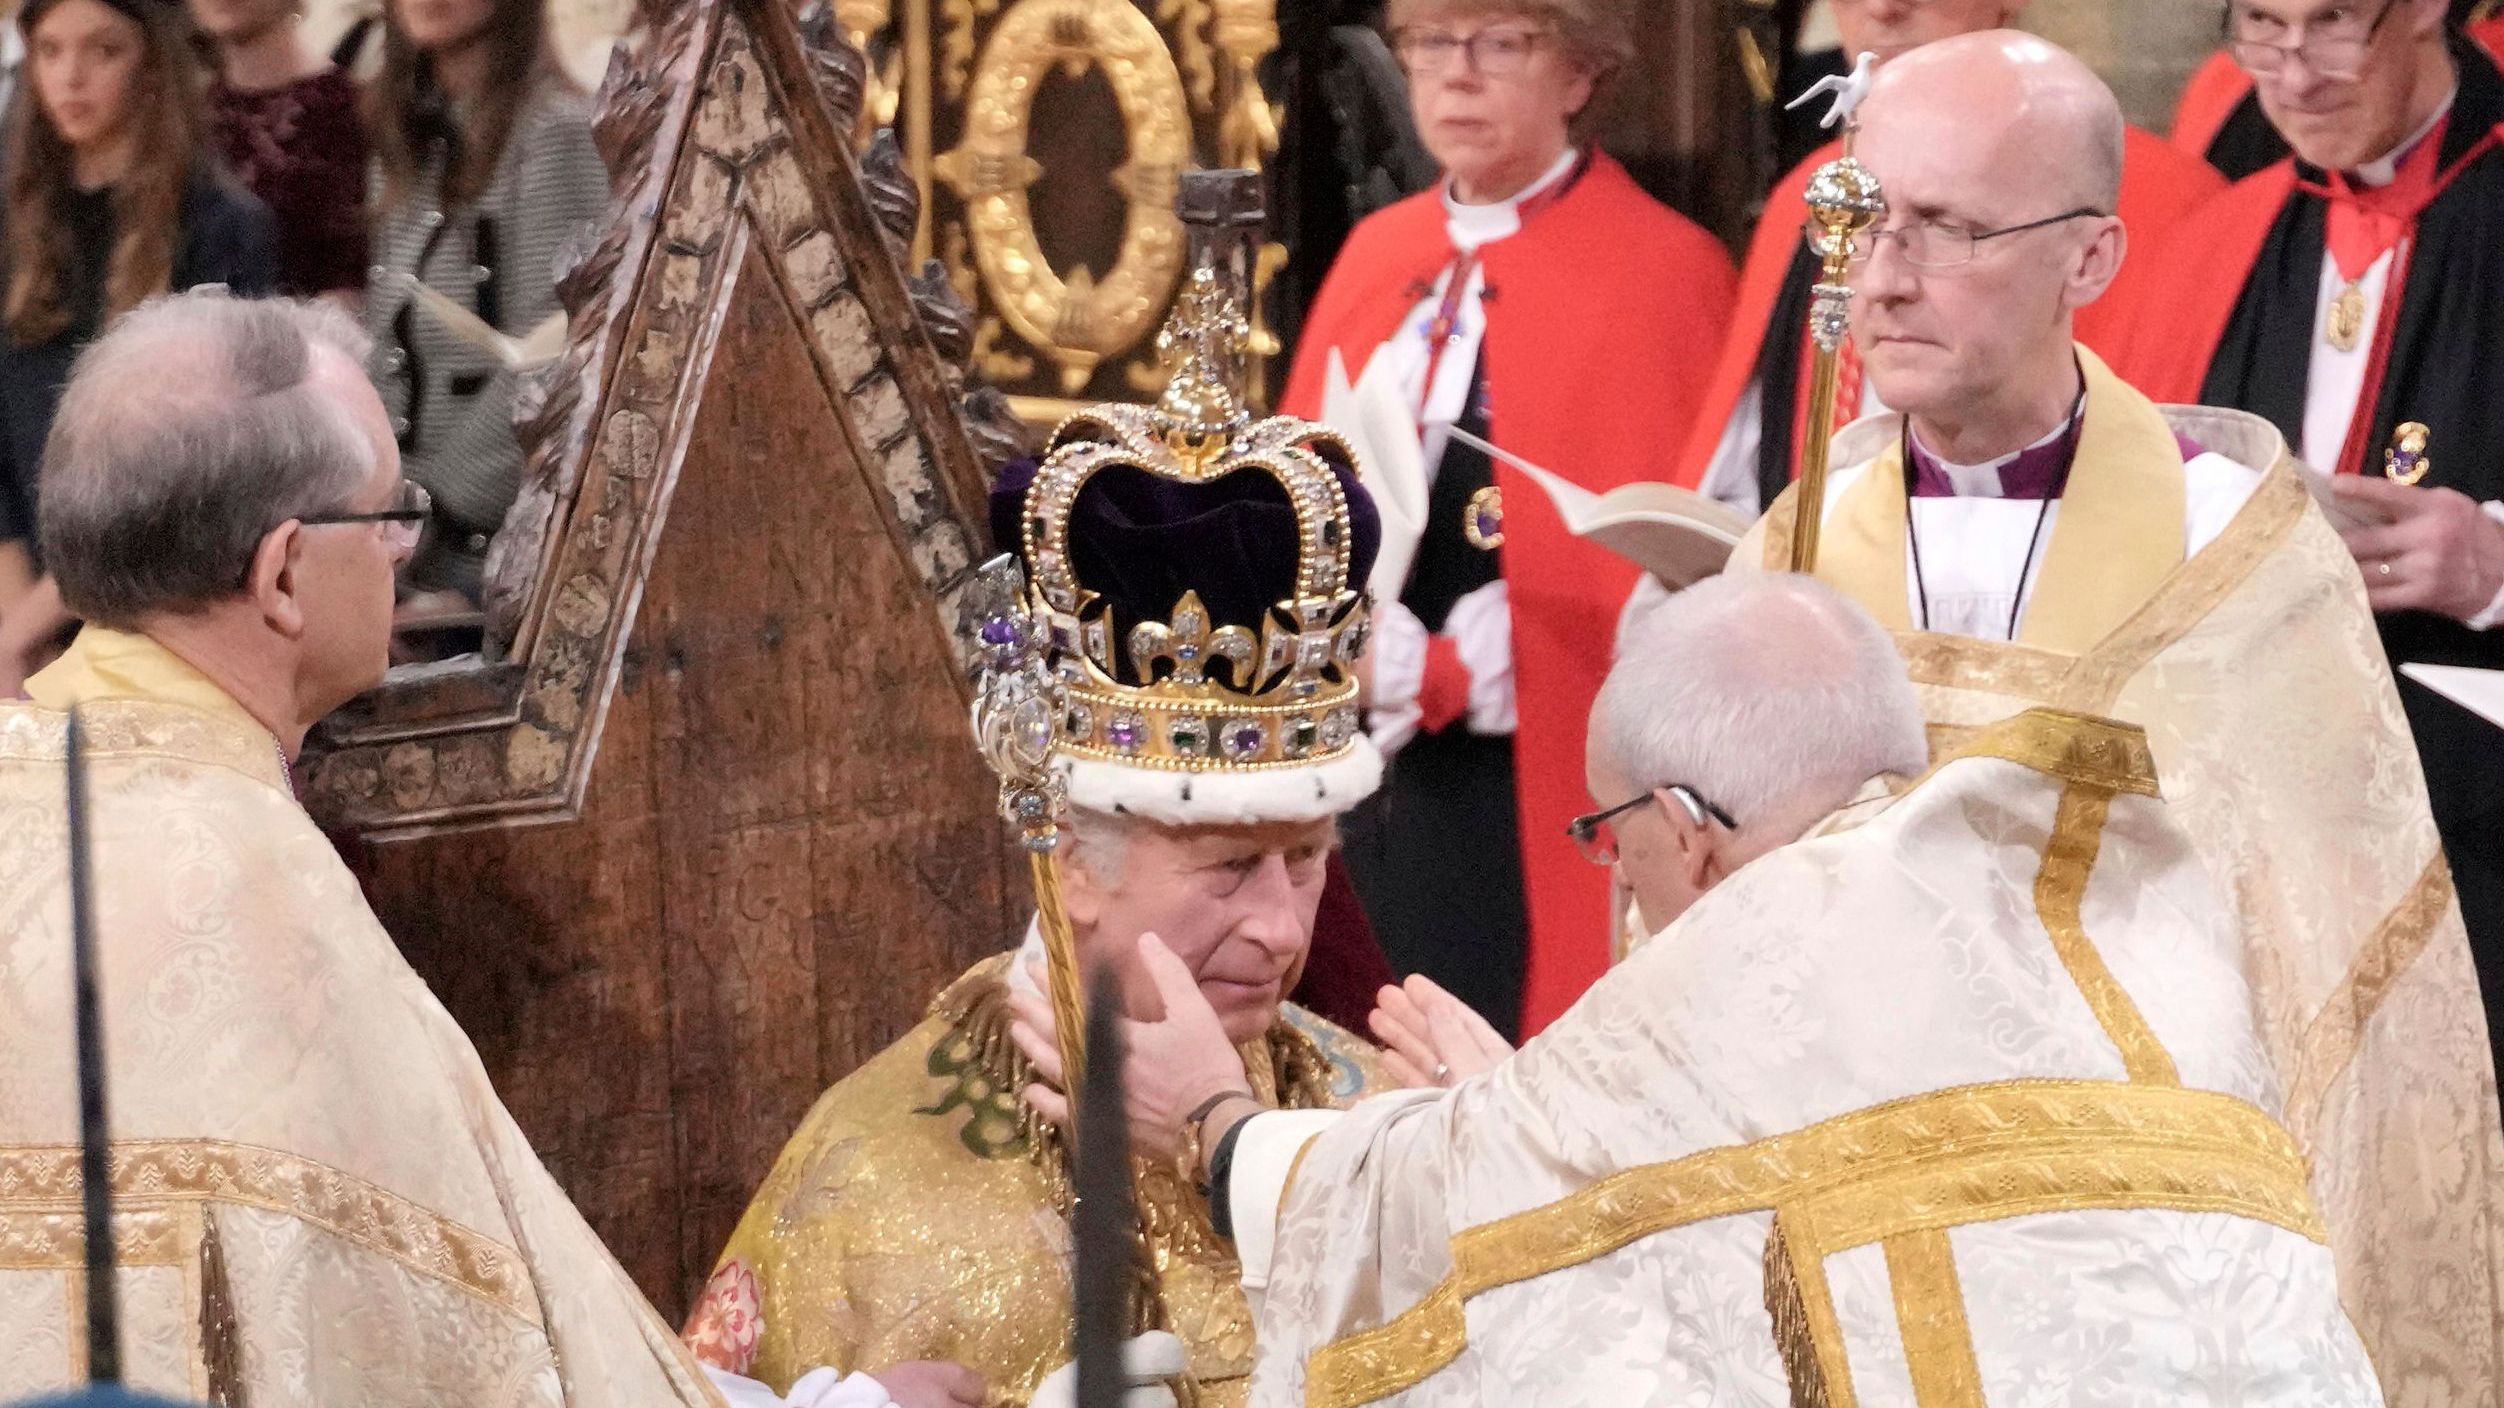 König Charles III. wird gekrönt.